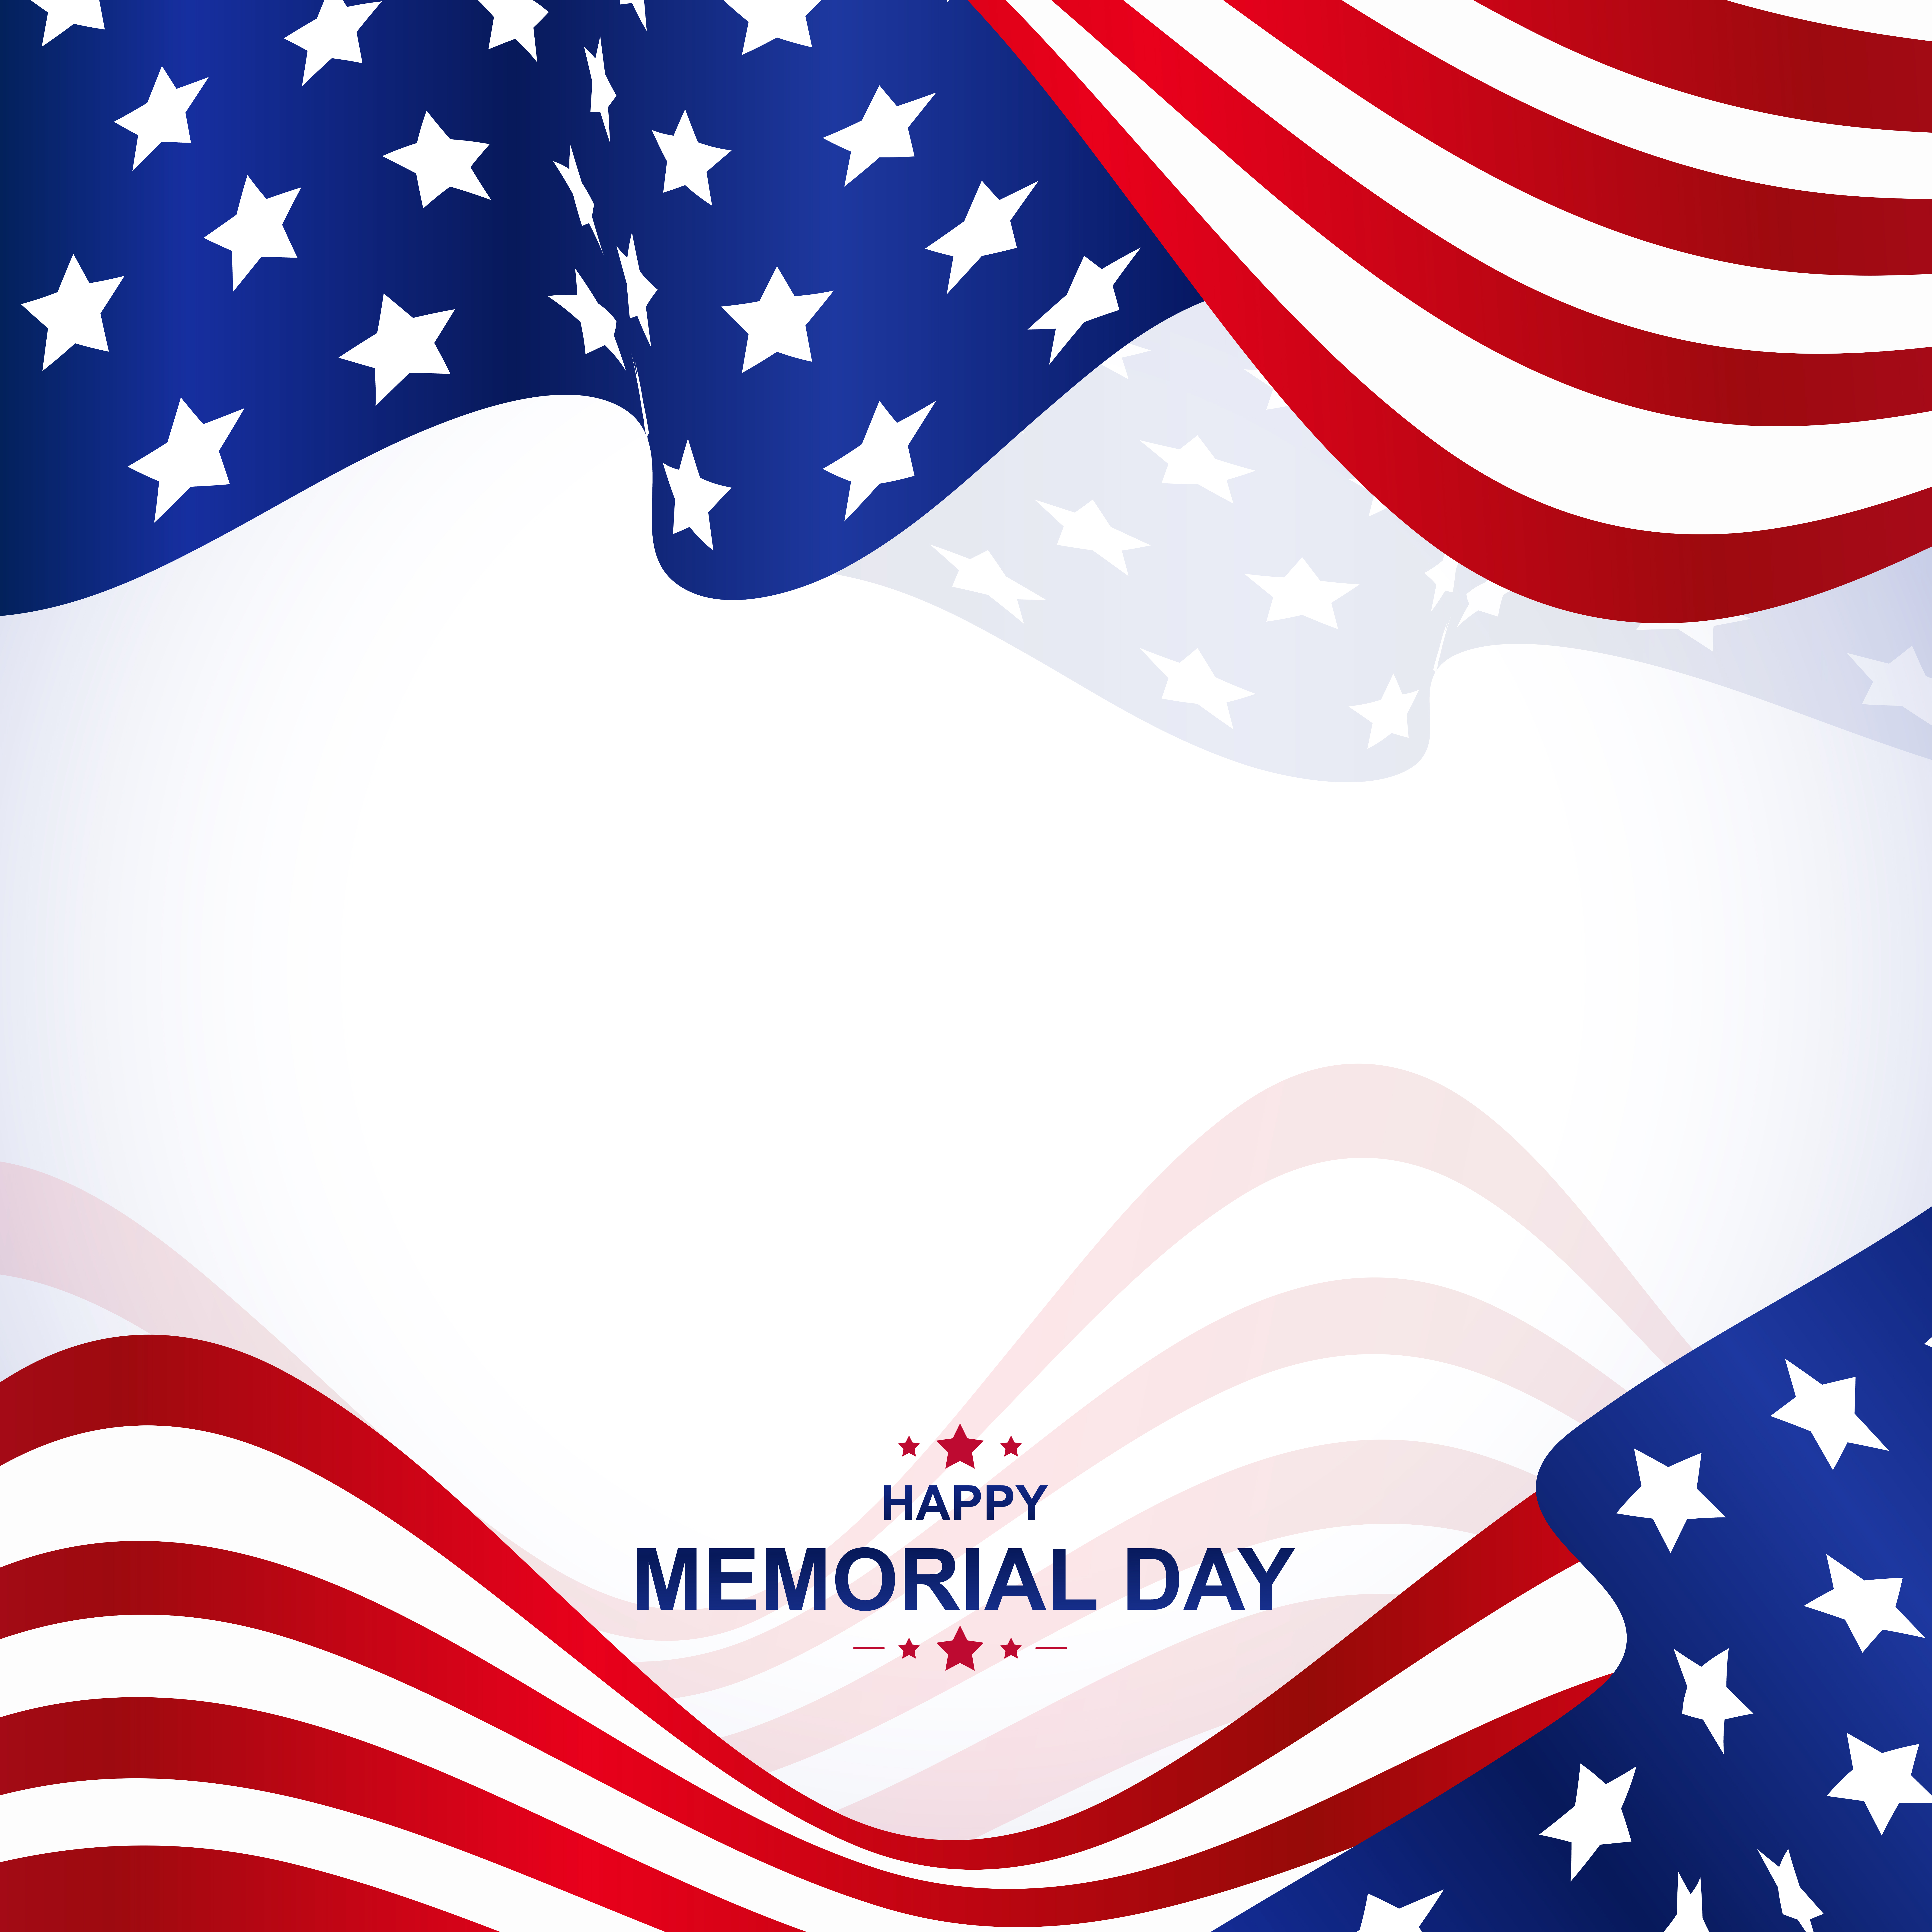 Happy Memorial Day Background Vector Art & Graphics